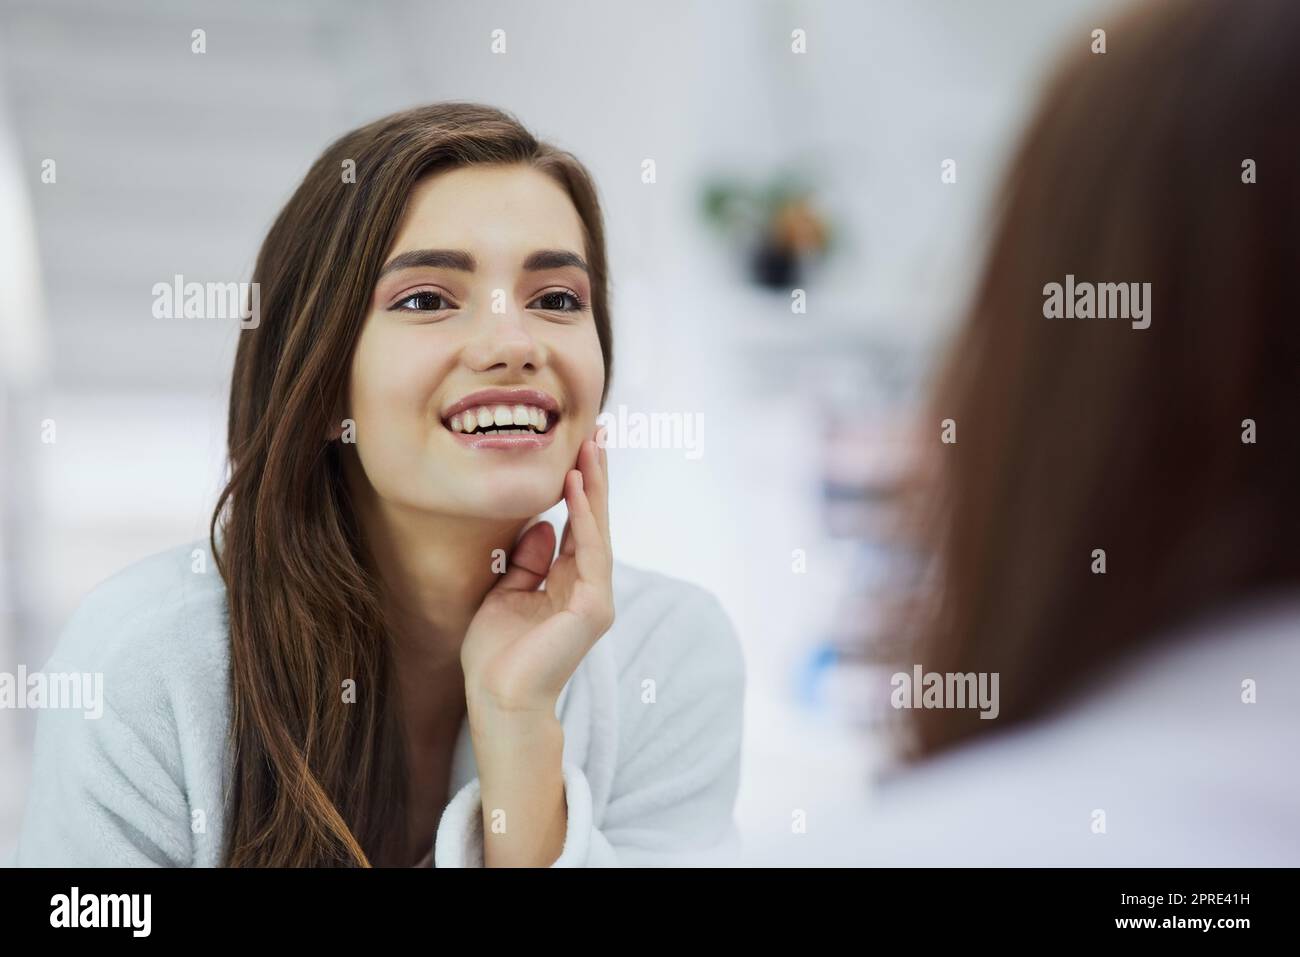 Oui, c'est vrai, IM parfait. Une jeune femme attrayante regardant dans un miroir avec sa main touchant sa joue à la maison pendant la journée. Banque D'Images